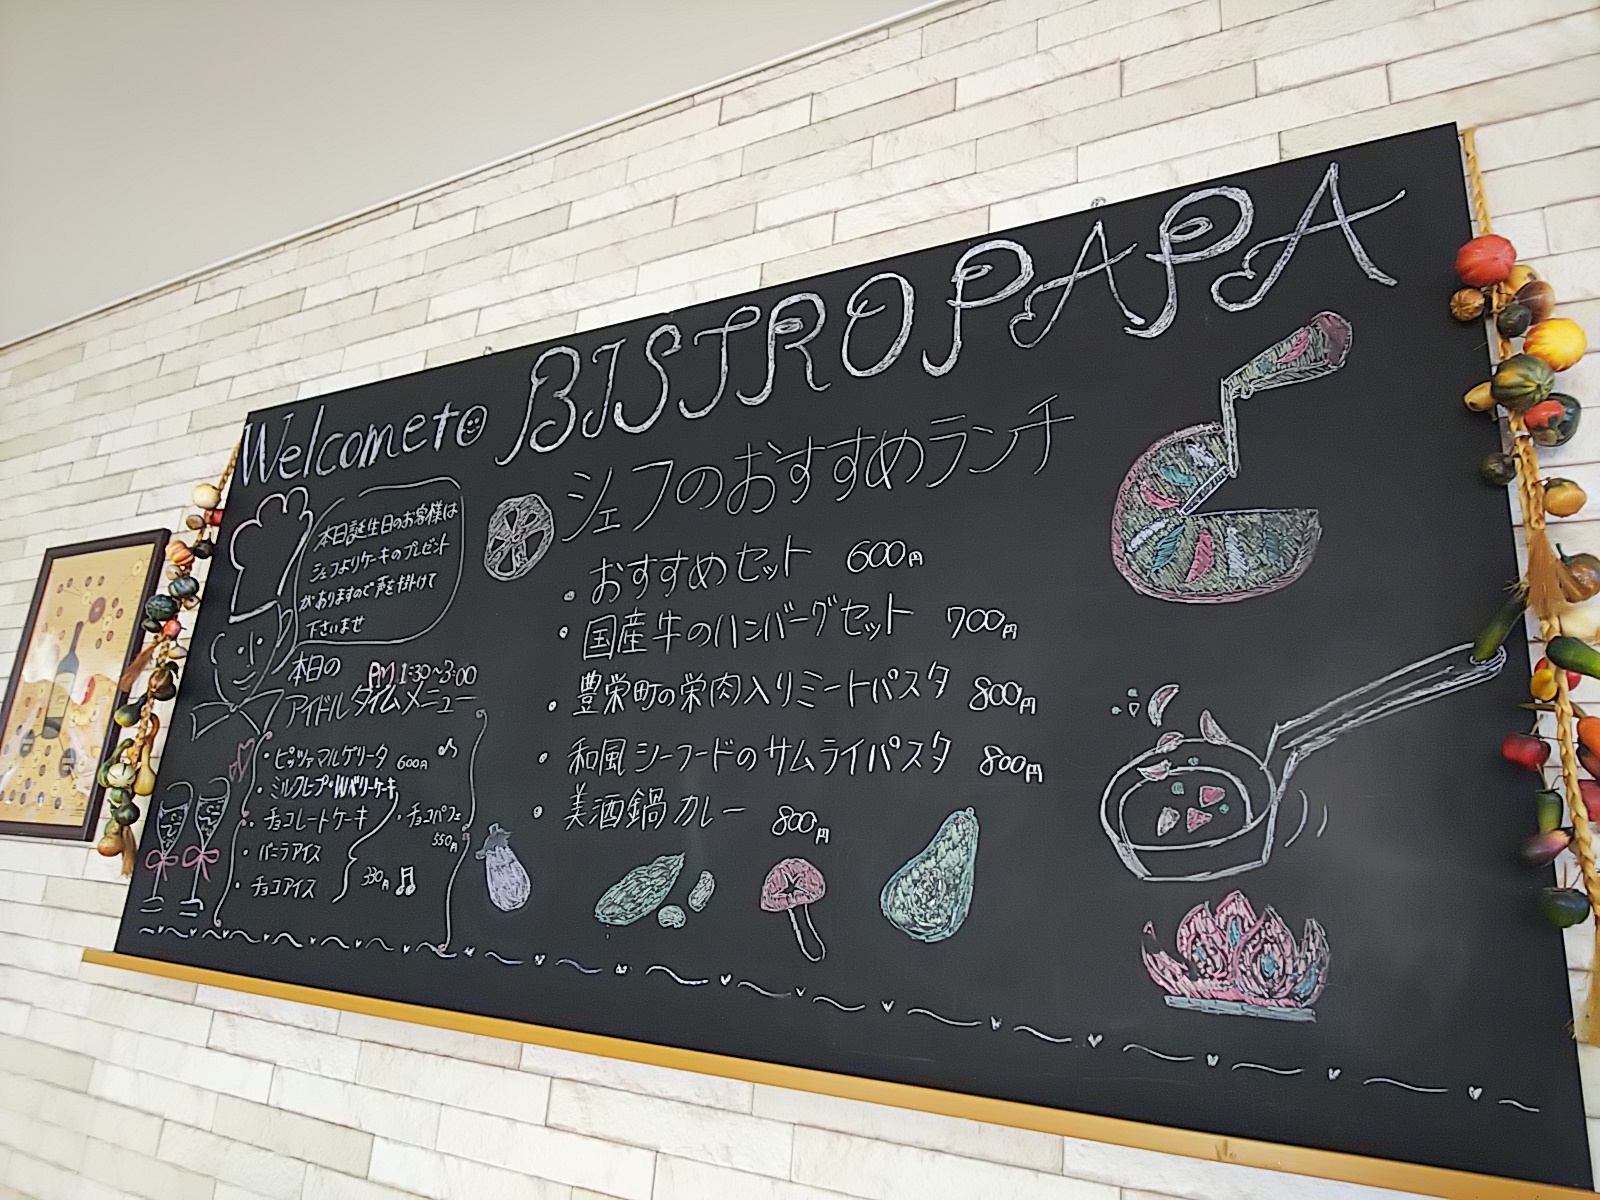 東広島市役所10階展望レストラン「ビストロパパ市役所店」にある、おすすめメニューの黒板